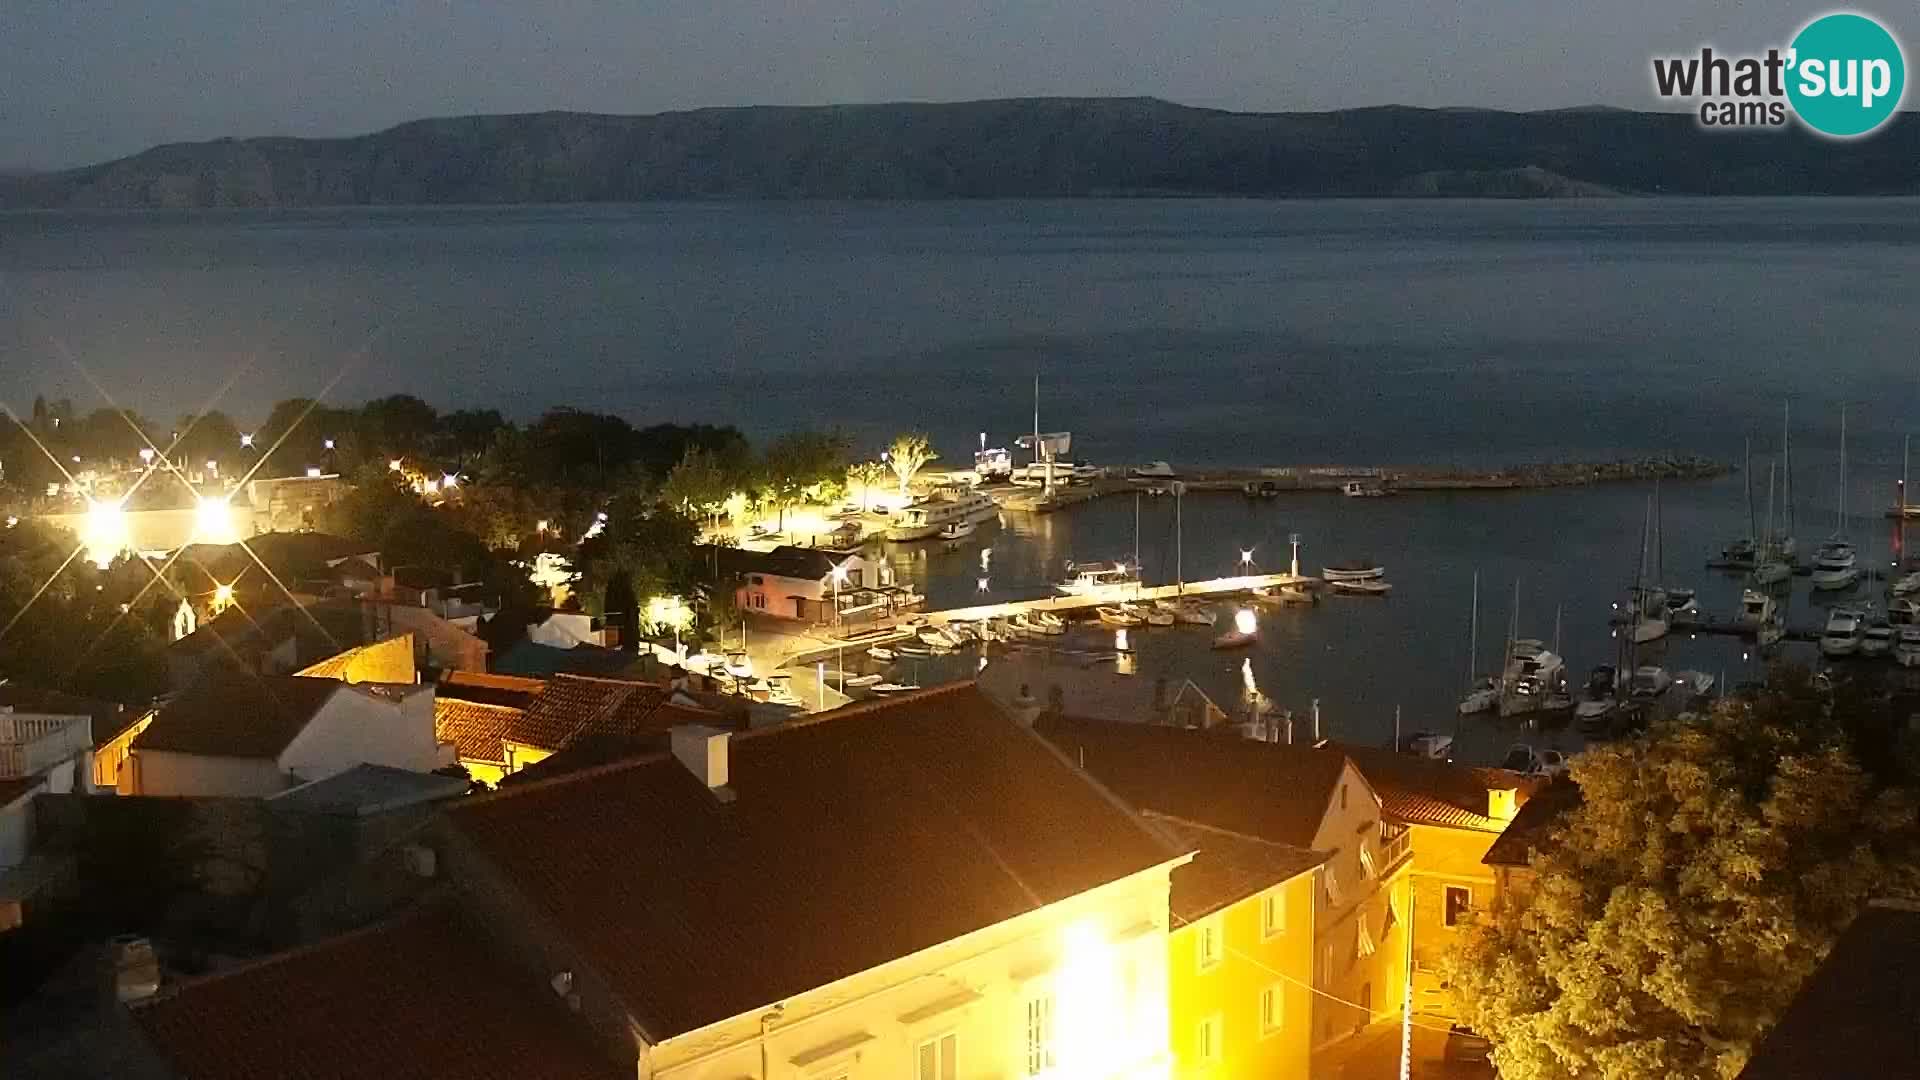 Novi Vinodolski camera en vivo Dalmatia